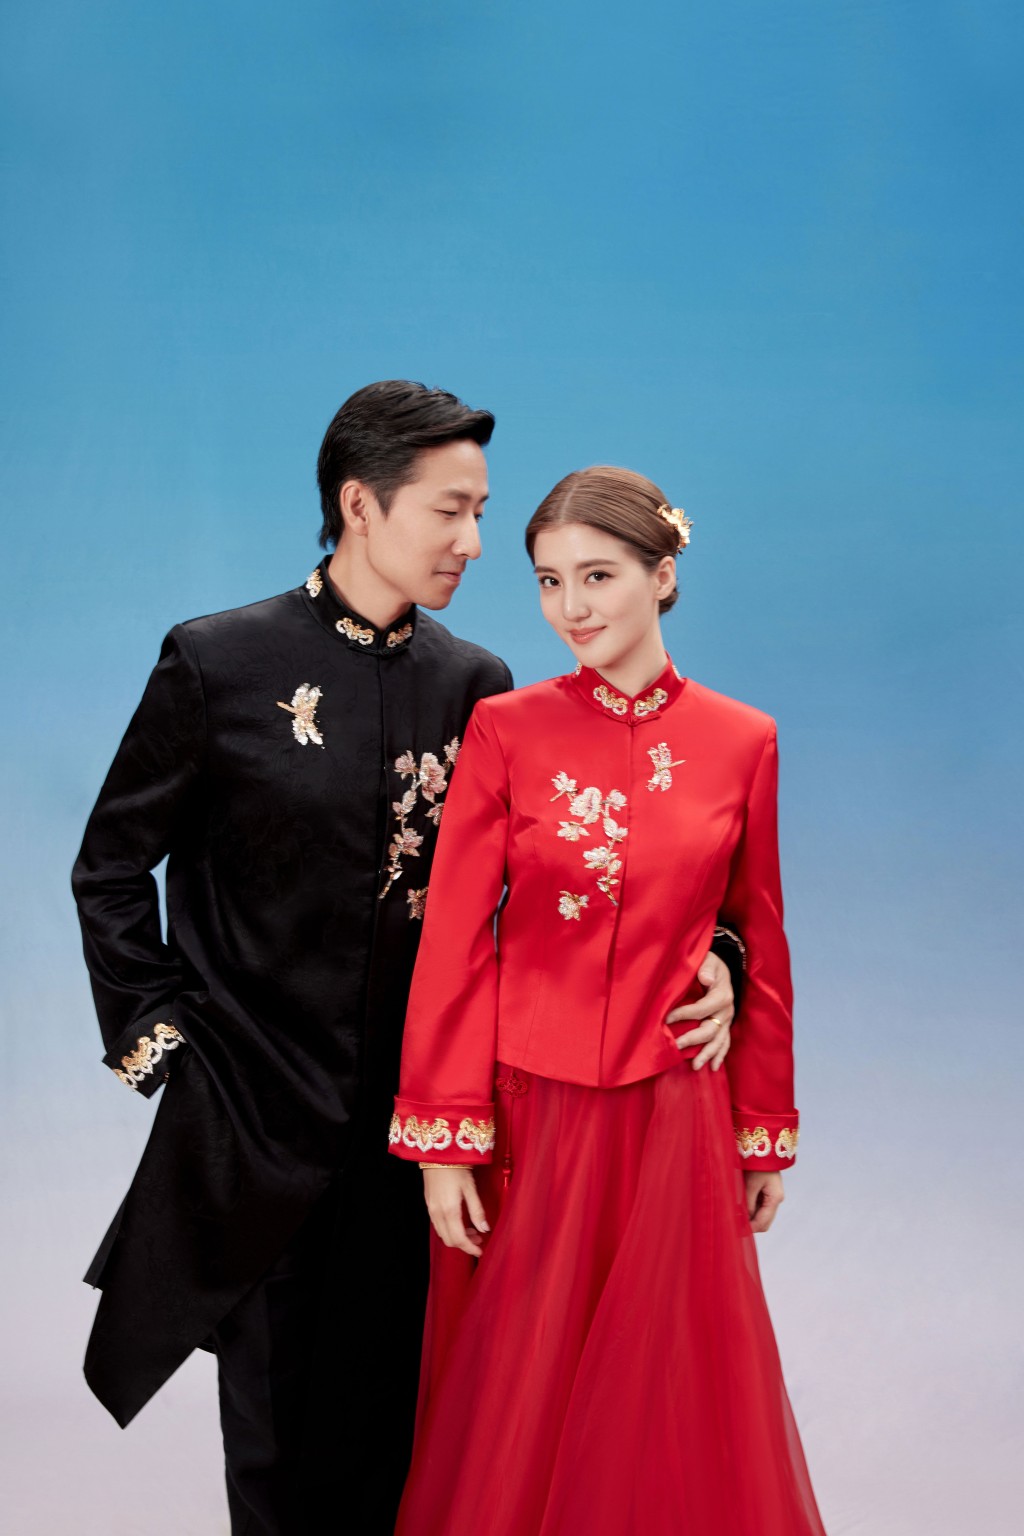 中式礼服品牌的官方社交平台透露今次是特别为吴千语同施伯雄独家订制。  ​